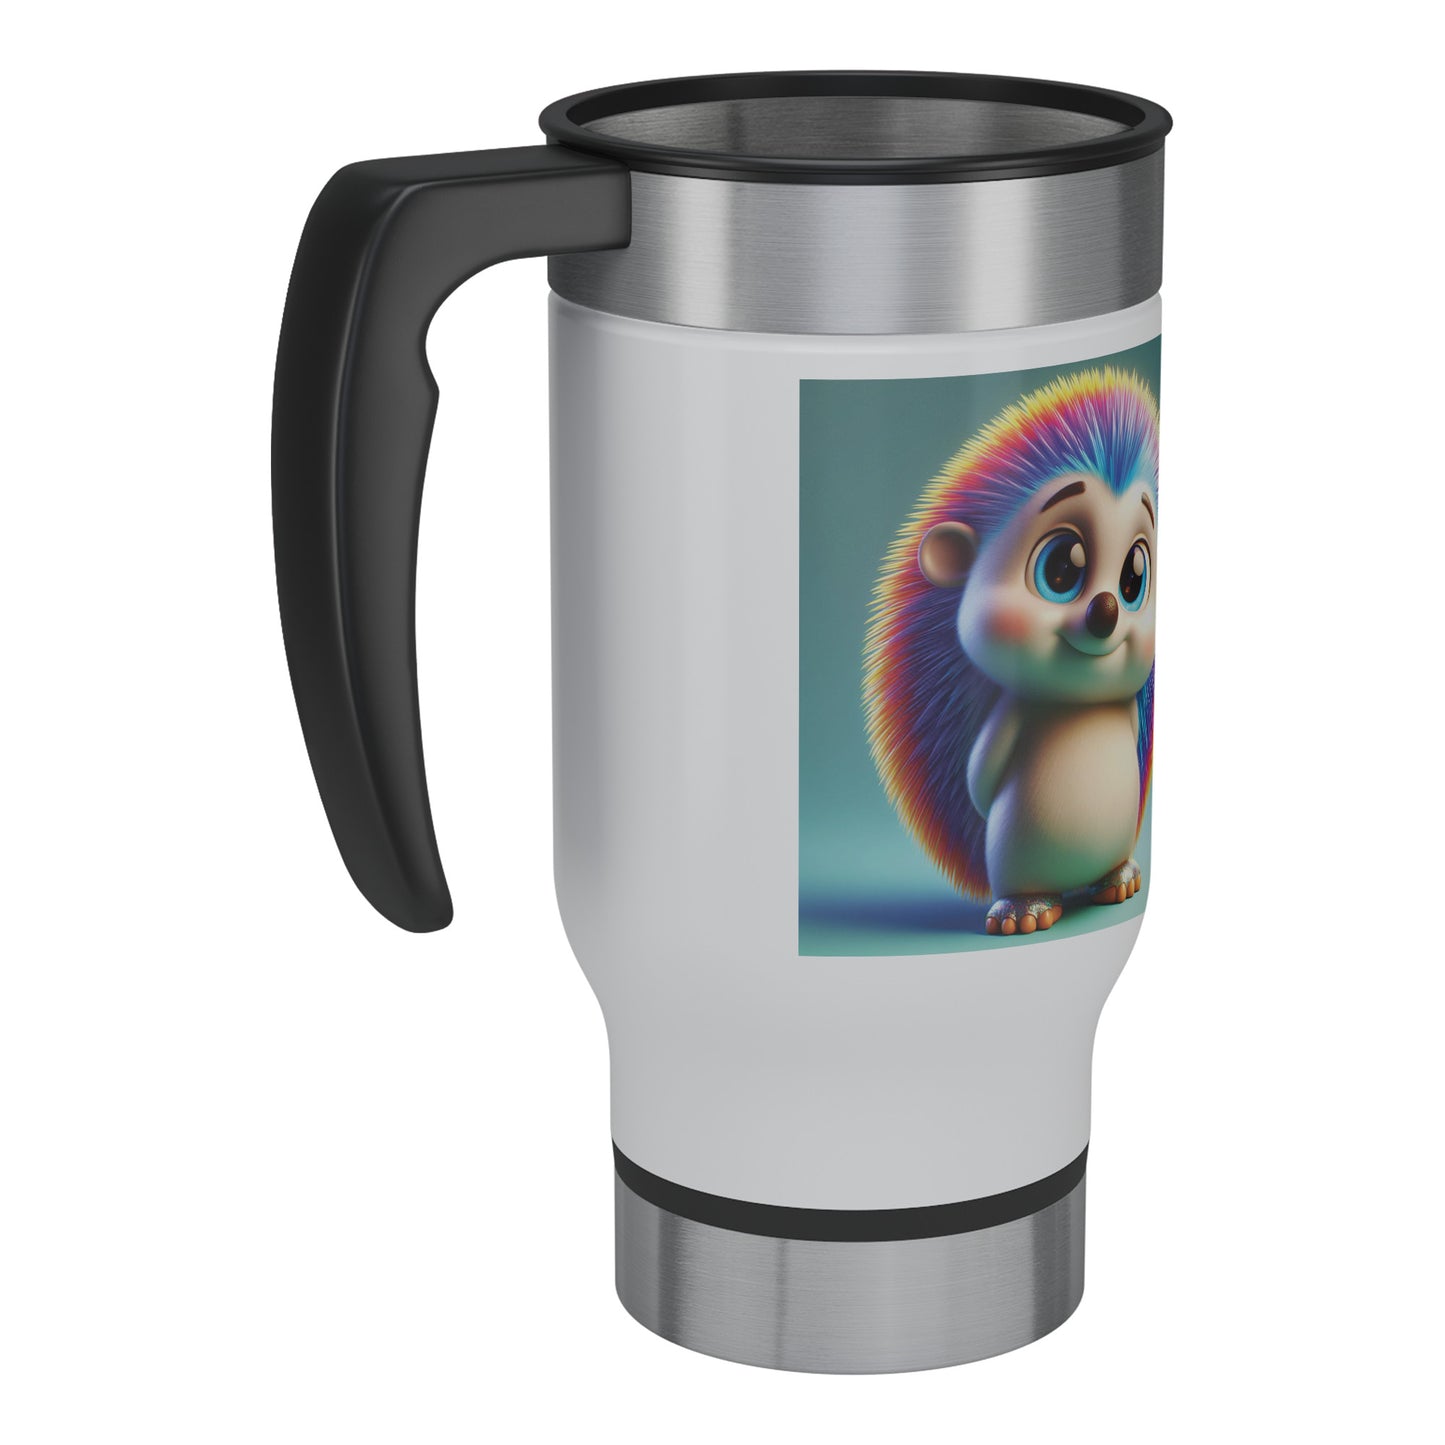 Cute & Adorable Mammals - 14oz Travel Mug - Hedgehog #1